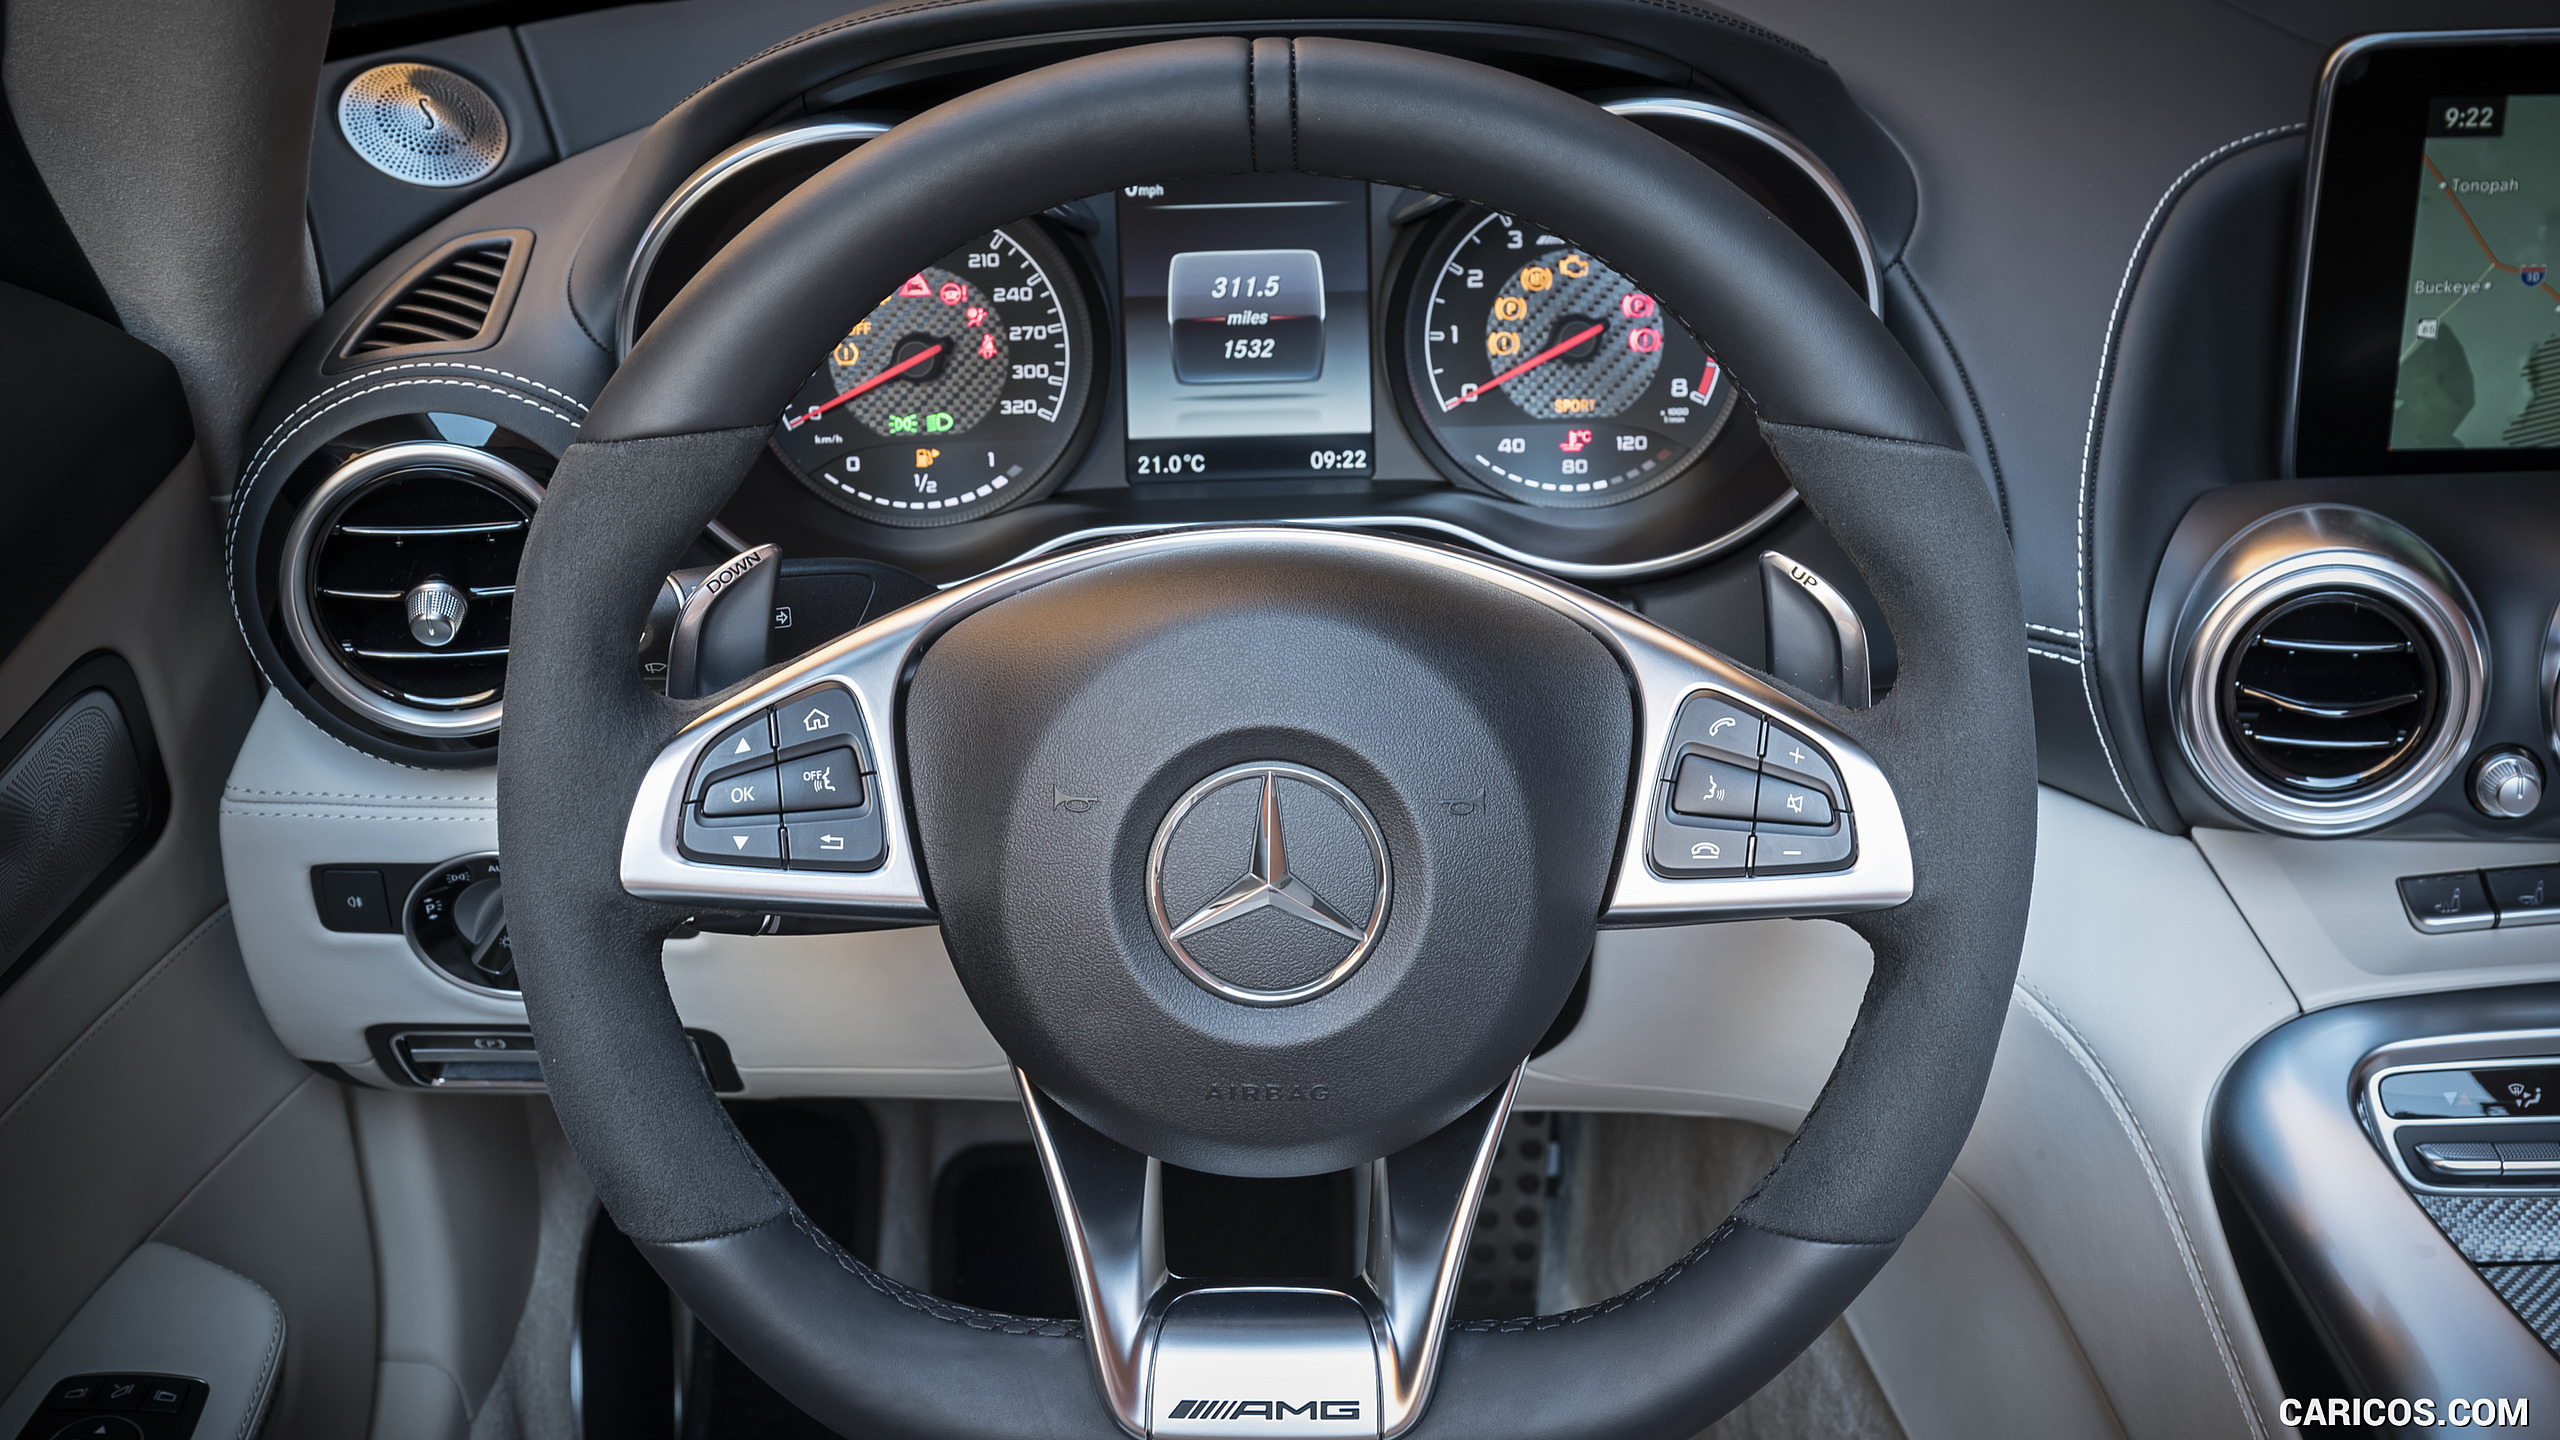 2018 Mercedes-AMG GT Roadster - Interior, Steering Wheel, #159 of 350